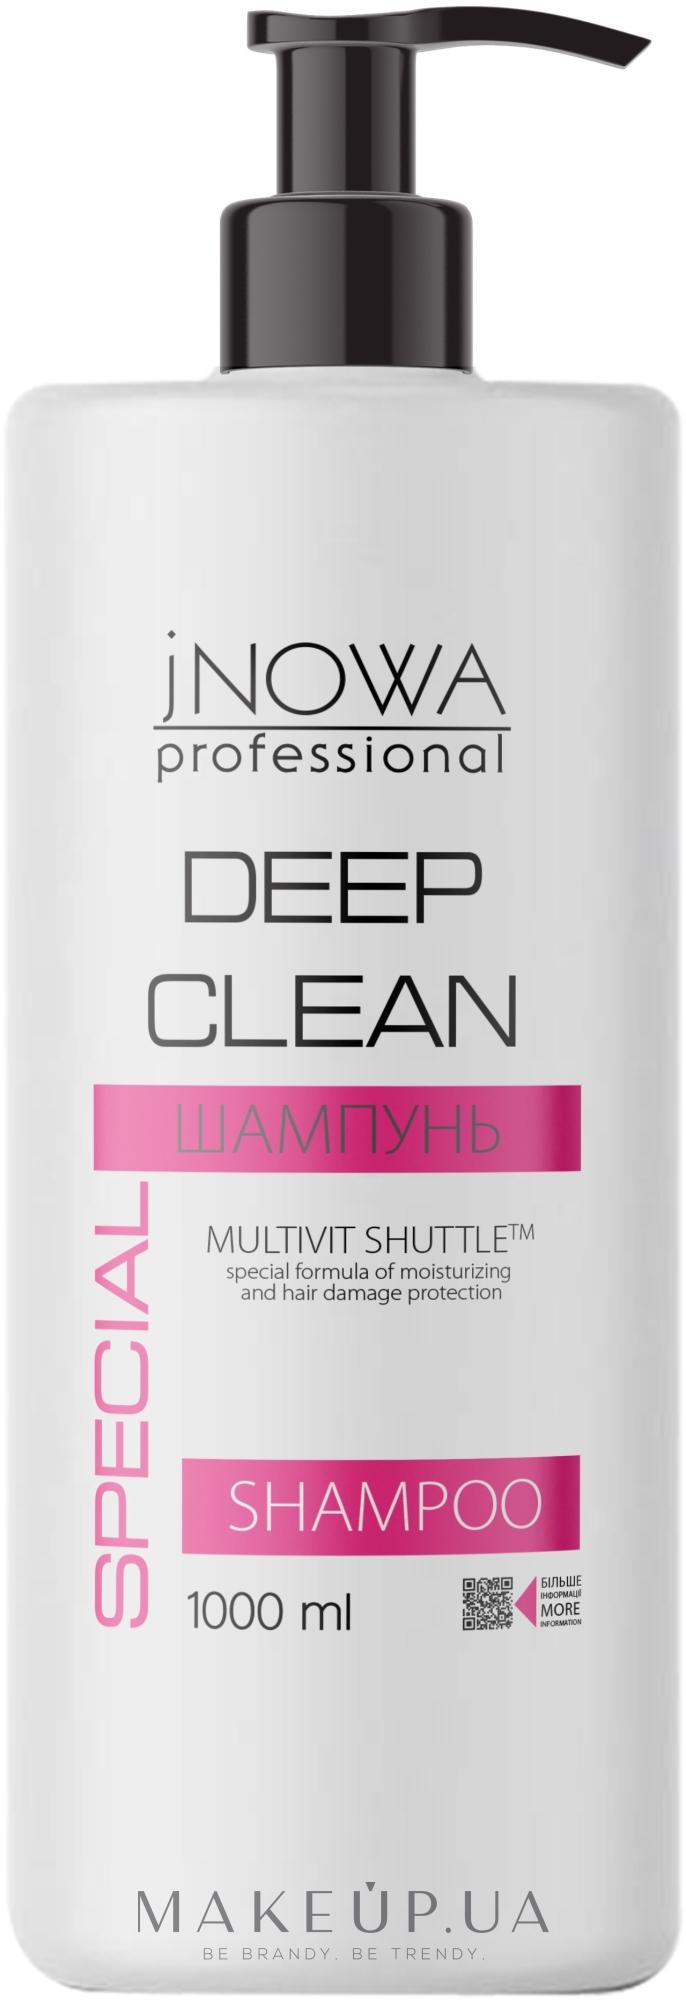 Шампунь для професійного глибокого очищення волосся та шкіри голови з морською сіллю - JNOWA Professional Deep Clean Shampoo — фото 1000ml